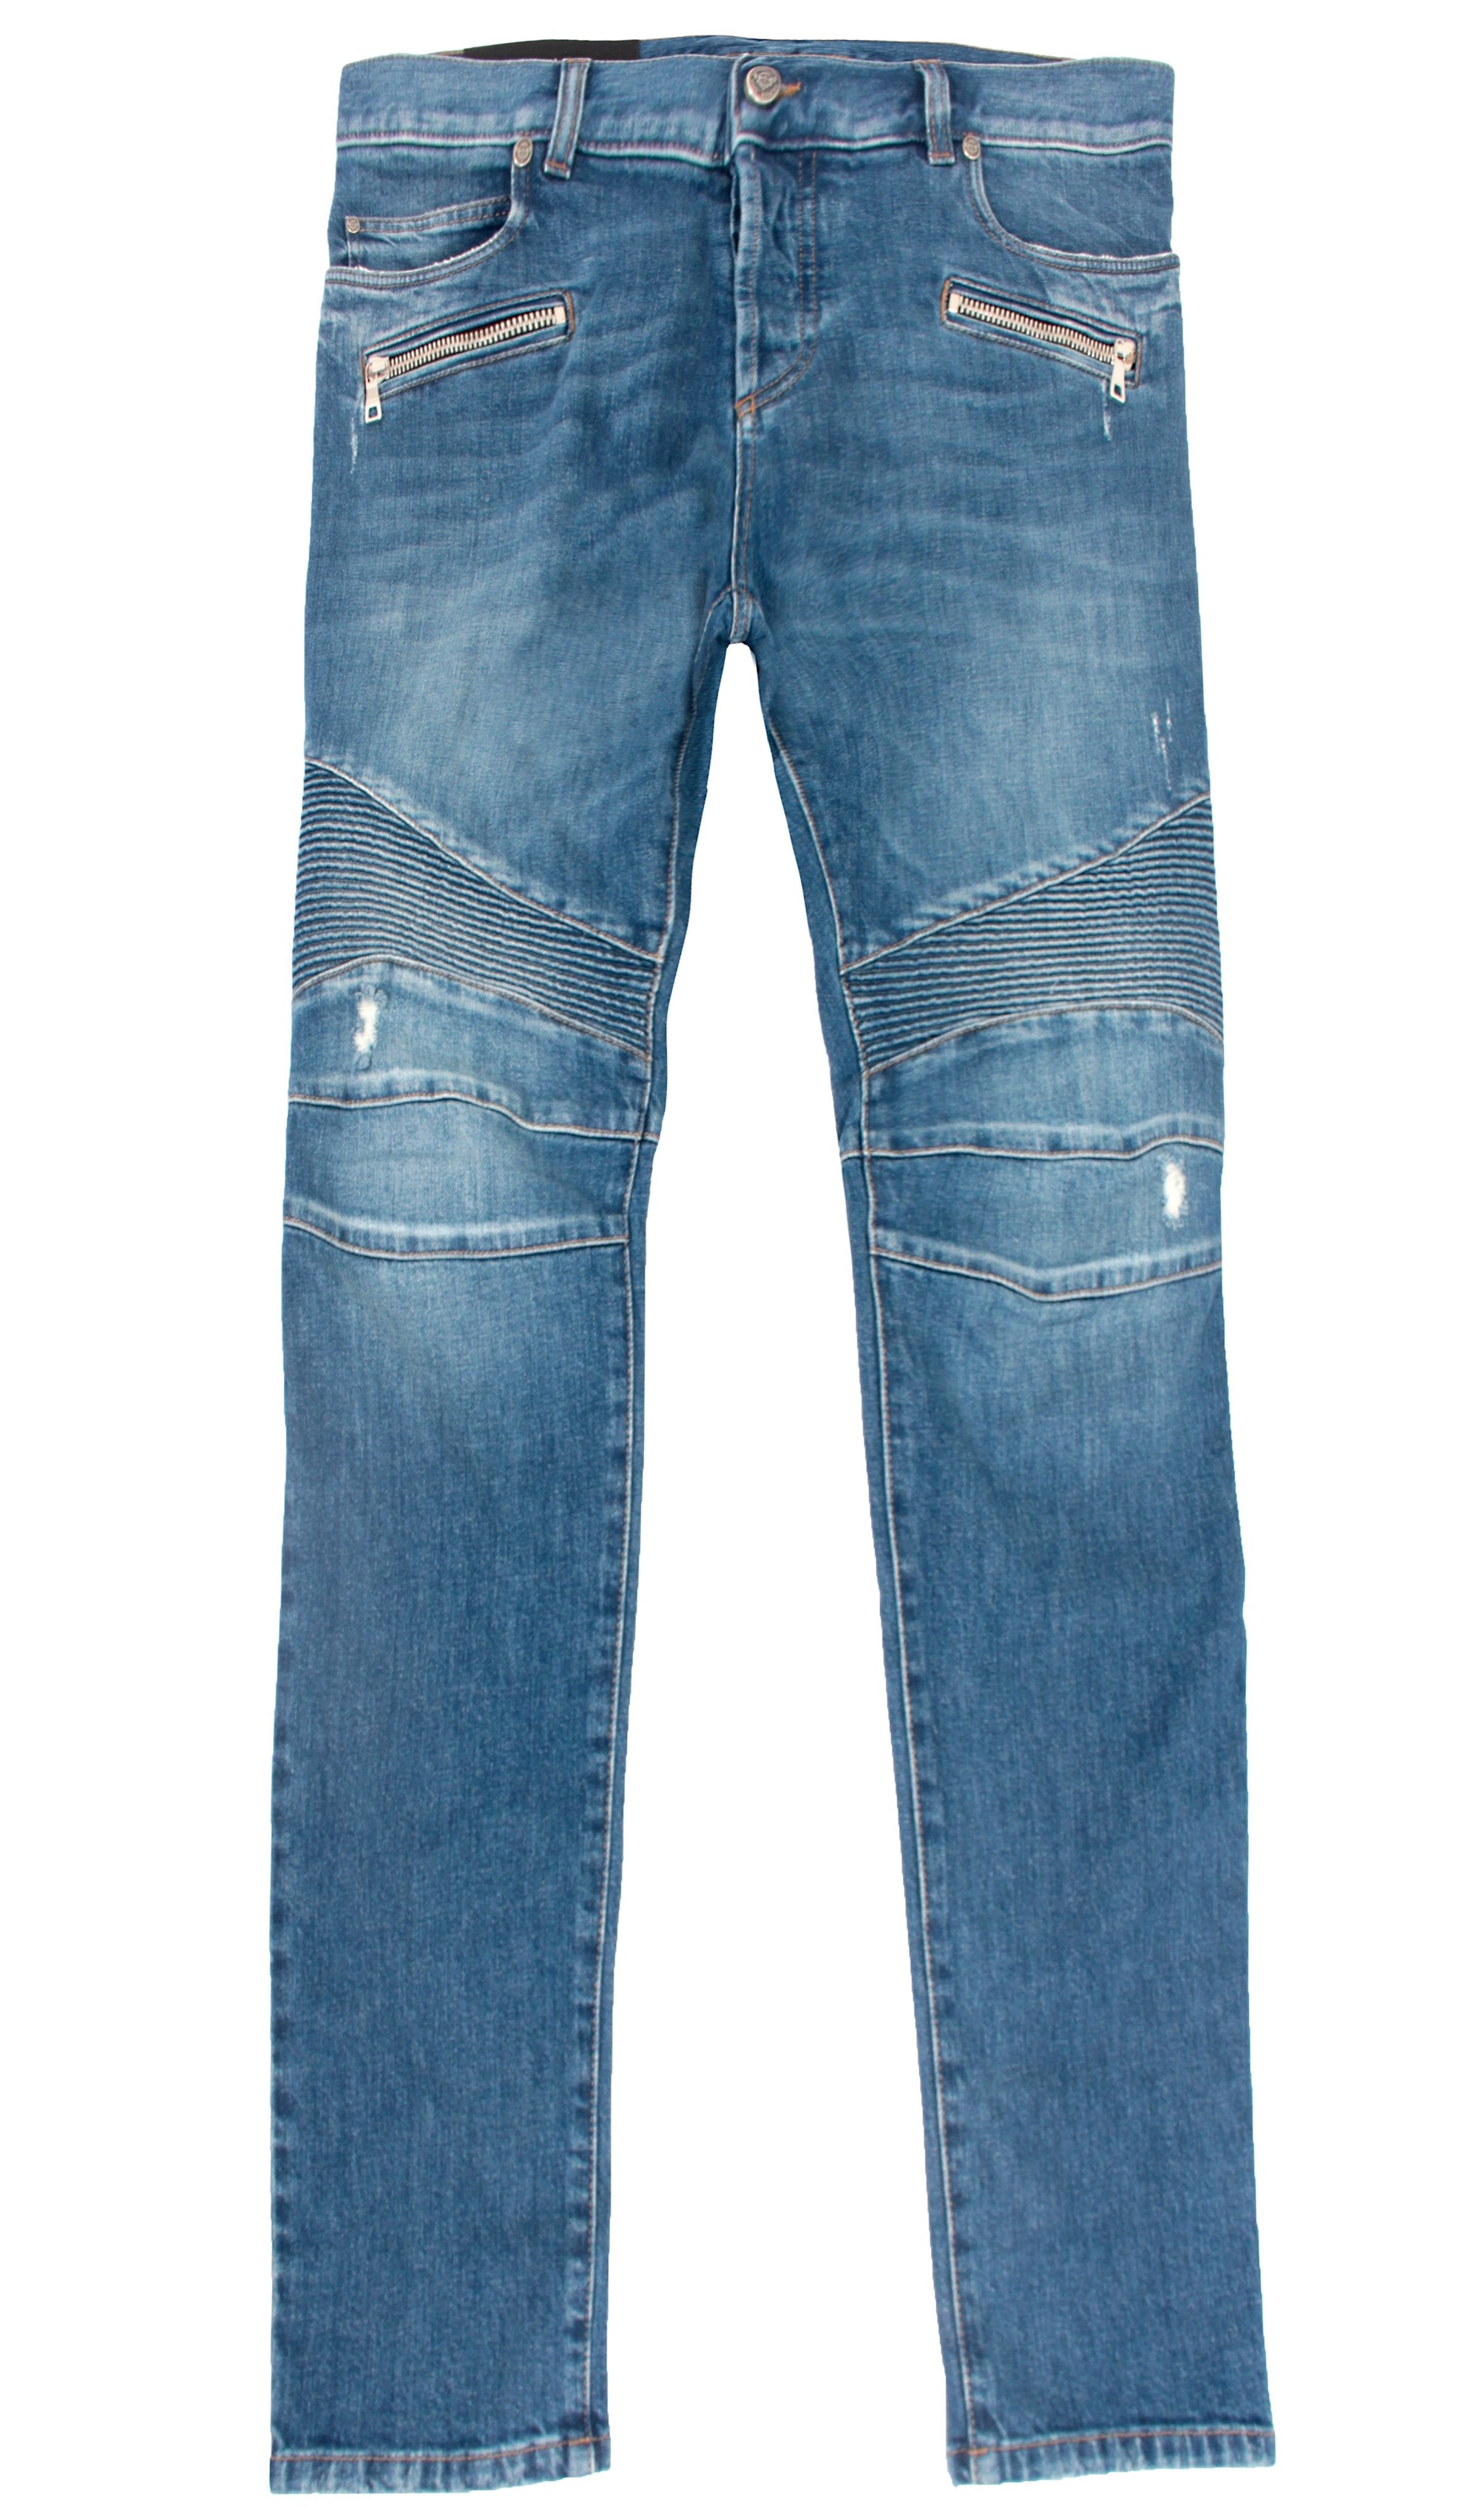 Ribbed Slim Jeans - Vintage Used Scraps